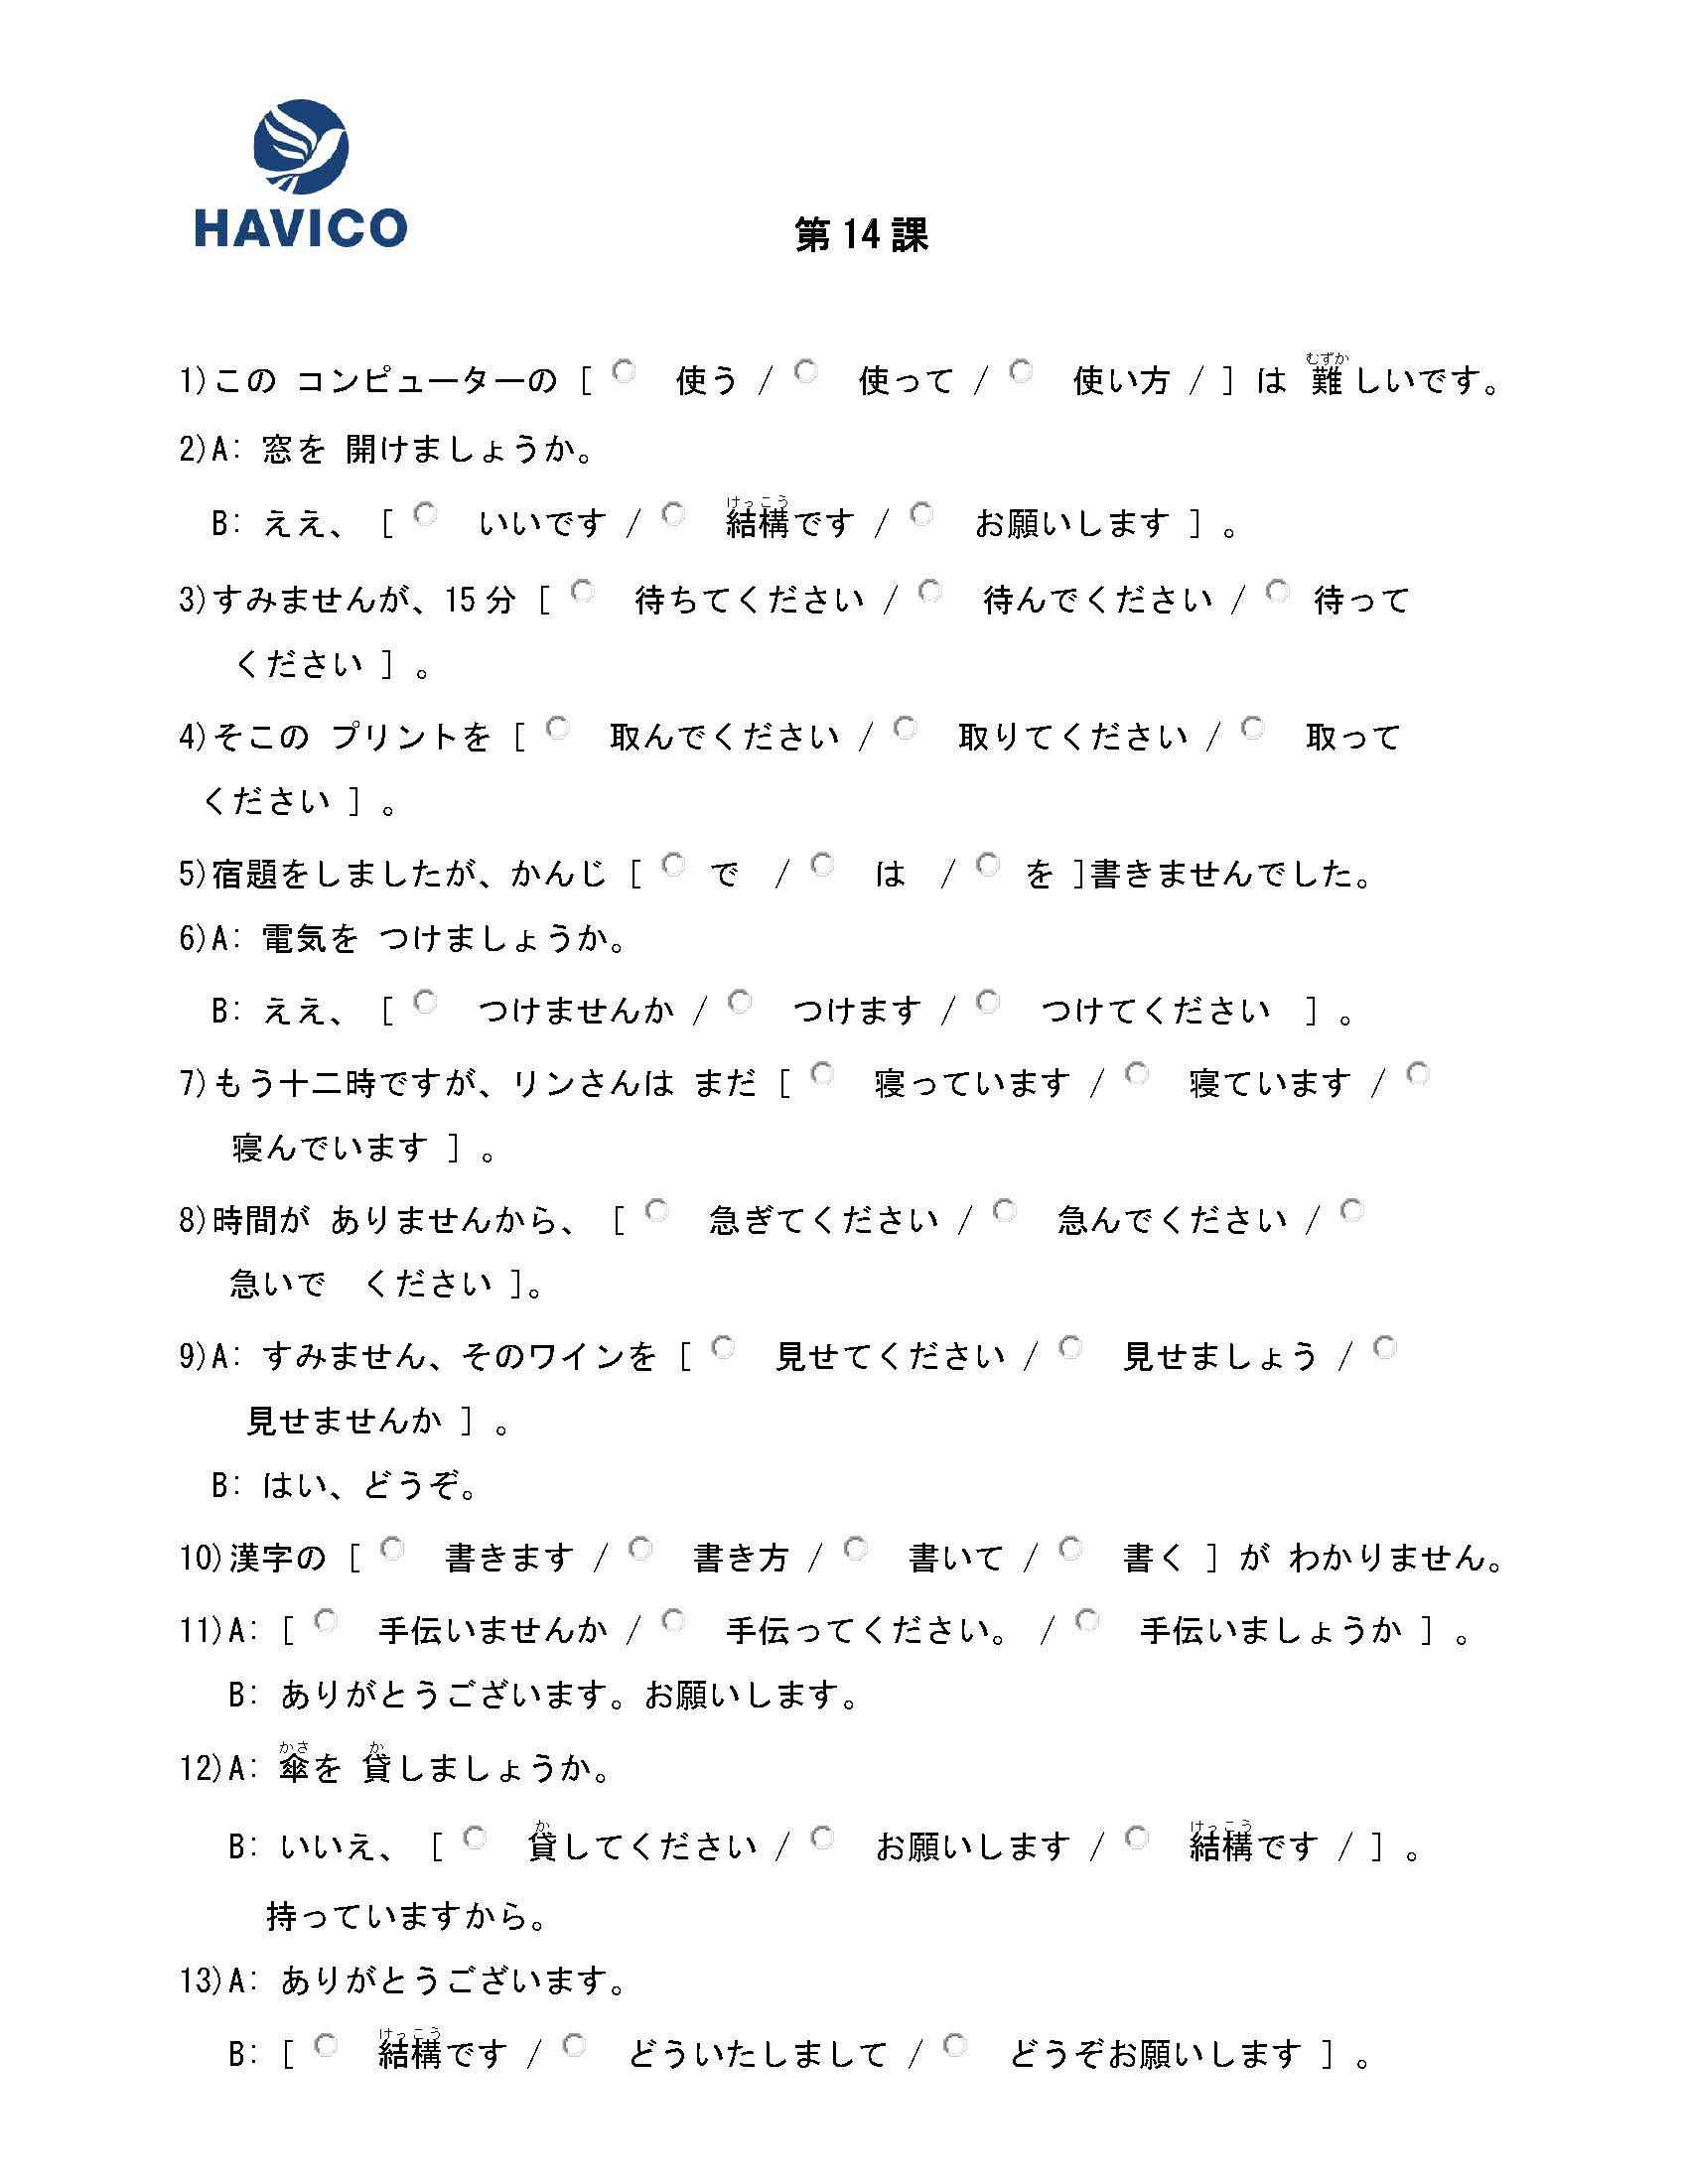 Bài 14: Tổng Hợp Tài Liệu và Bài Học Tiếng Nhật